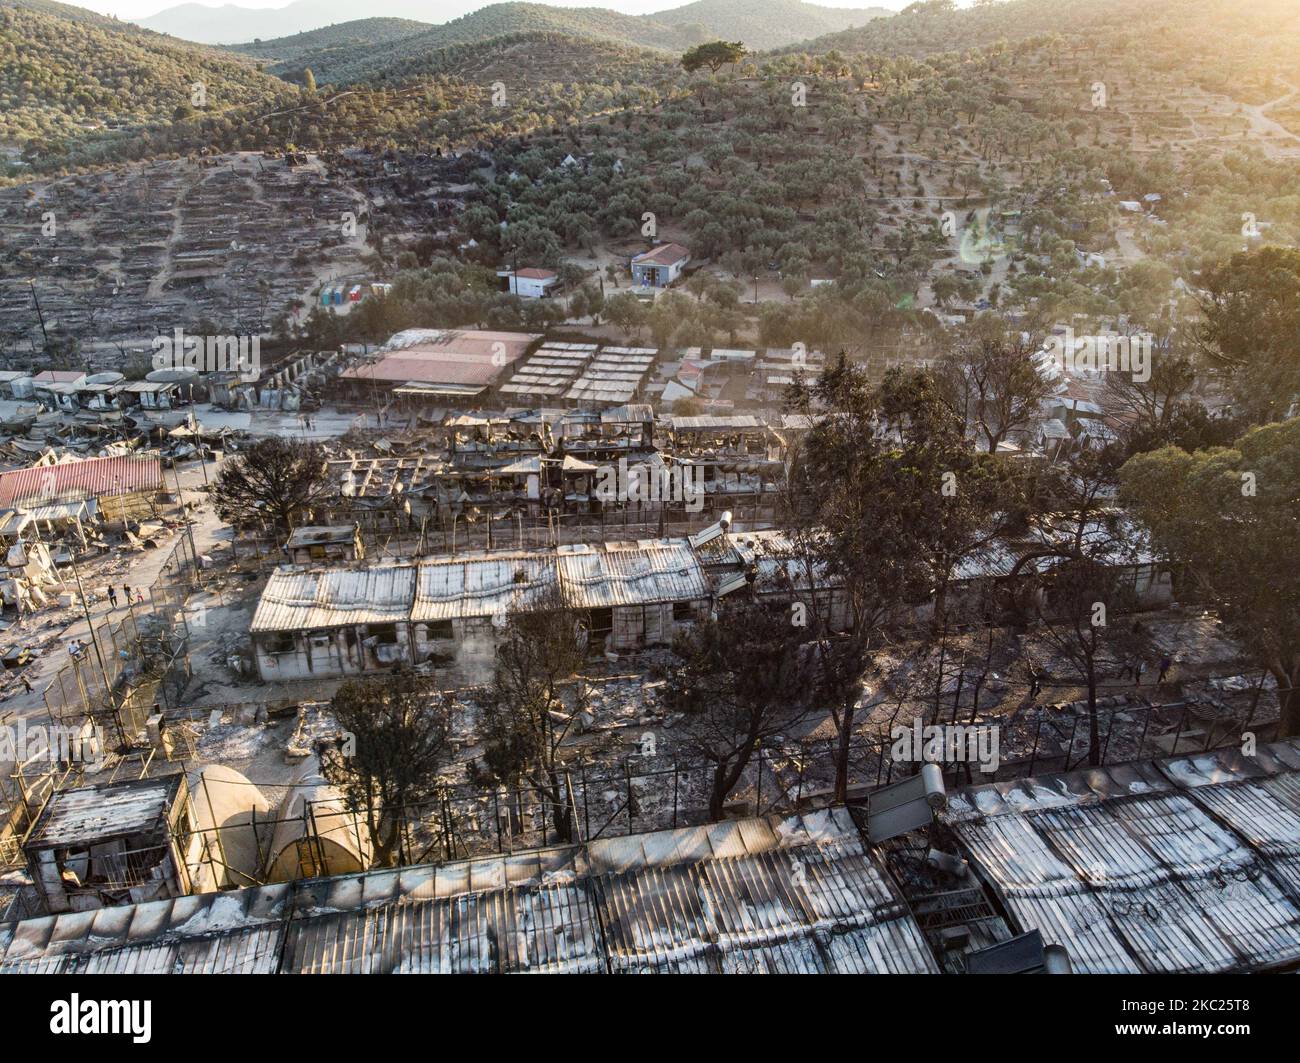 Vue panoramique depuis un drone des suites du premier incendie dans le camp de réfugiés de Moria et les oliveraies voisines. Des milliers de demandeurs d'asile ont vécu après l'incendie sur le bord de la route dans des tentes de fortune, ont été transférés au nouveau camp de réfugiés à Kara Tepe - Mavrovouni, une ancienne zone militaire, champ de tir de l'armée hellénique, près de la ville de Mytilène dans l'île de Lesbos en Grèce. Le nouveau camp temporaire Kara Tepe a été créé après le feu de 9 septembre 2020, lorsque l'un des plus grands camps de réfugiés d'Europe, Moria hotspot (centre d'accueil, d'identification et d'enregistrement) a été brûlé. Al Banque D'Images